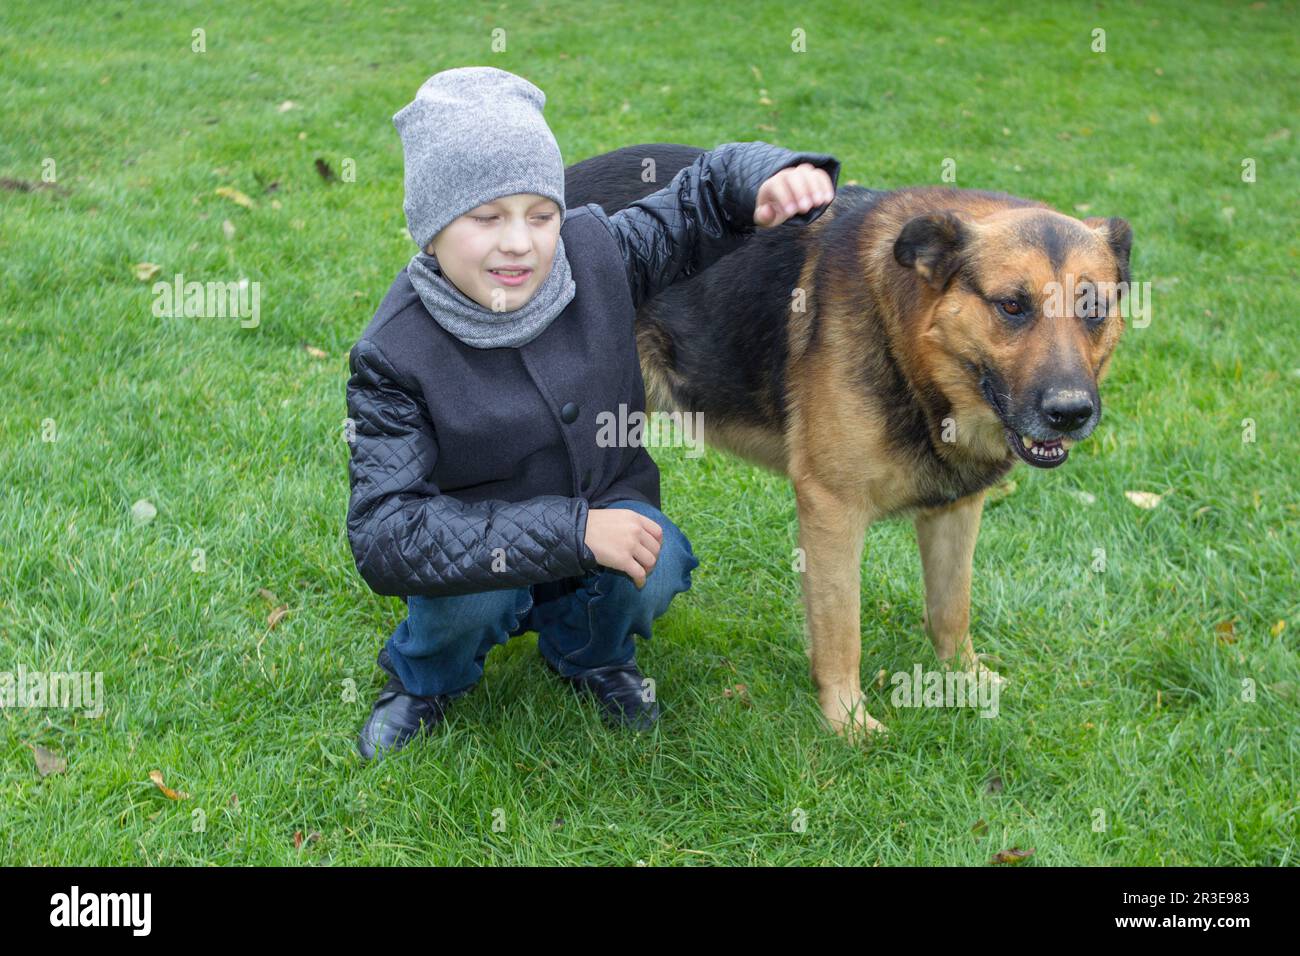 Auf dem Gras umarmte der Junge einen Hund im Garten Stockfoto